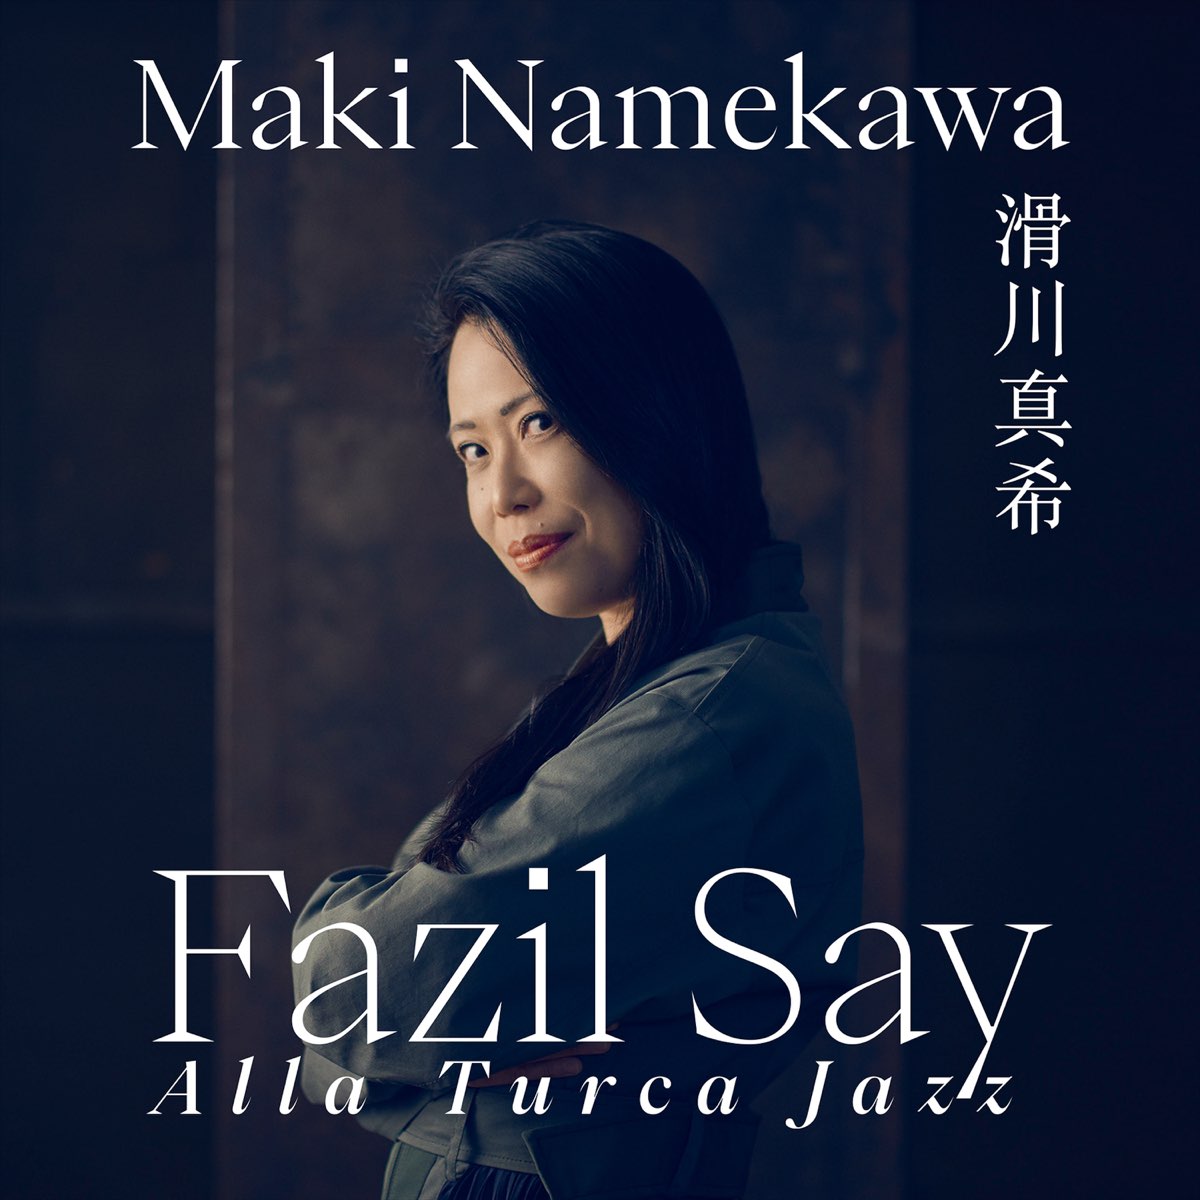 Fazil Say: Alla Turca Jazz (Fantasia on the Rondo from Mozart's Piano  Sonata in A Major, K. 331) - Single - Album by Maki Namekawa - Apple Music